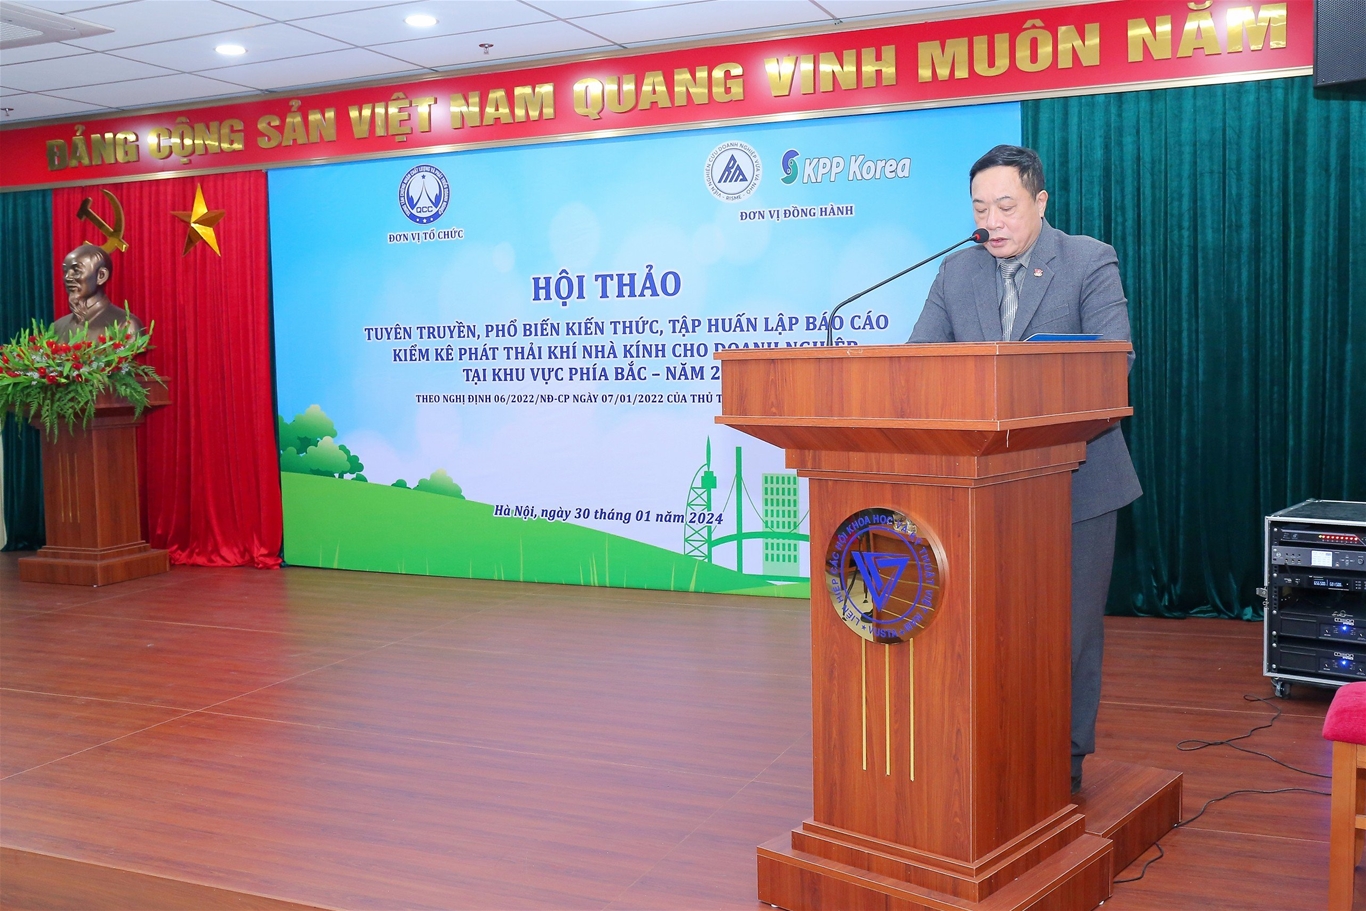 Phó Chủ tịch thường trực Hội đồng Khoa học - Trung tâm Chứng nhận Chất lượng và Phát triển Doanh nghiệp Nguyễn Ngọc Kim Anh phát biểu khai mạc